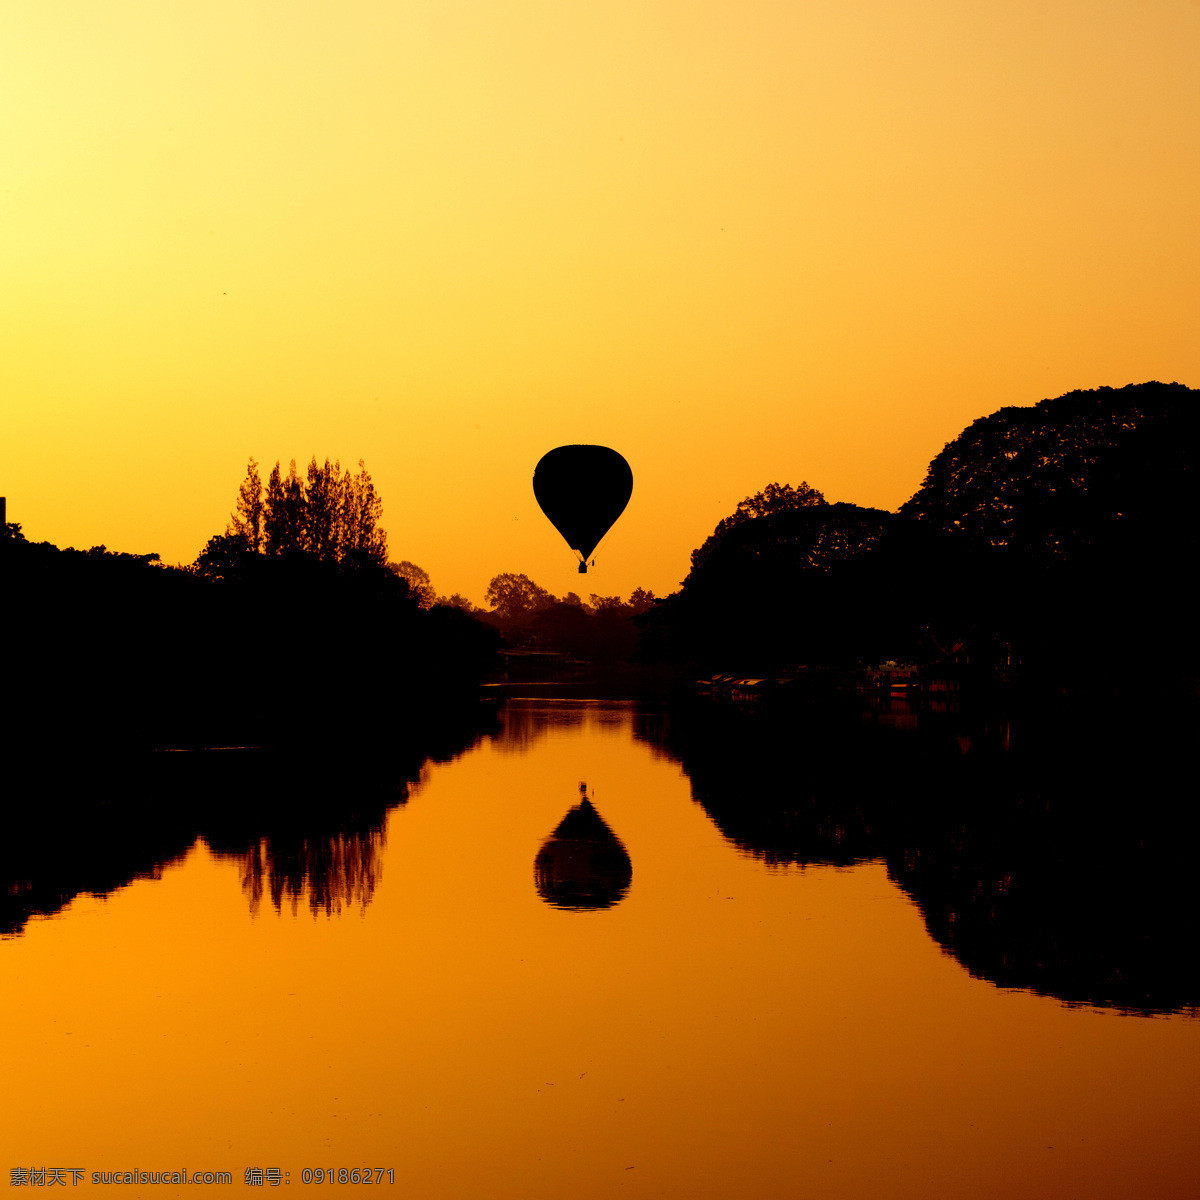 黄昏 风景 热气球 绚丽 彩色 其他类别 生活百科 观赏工具